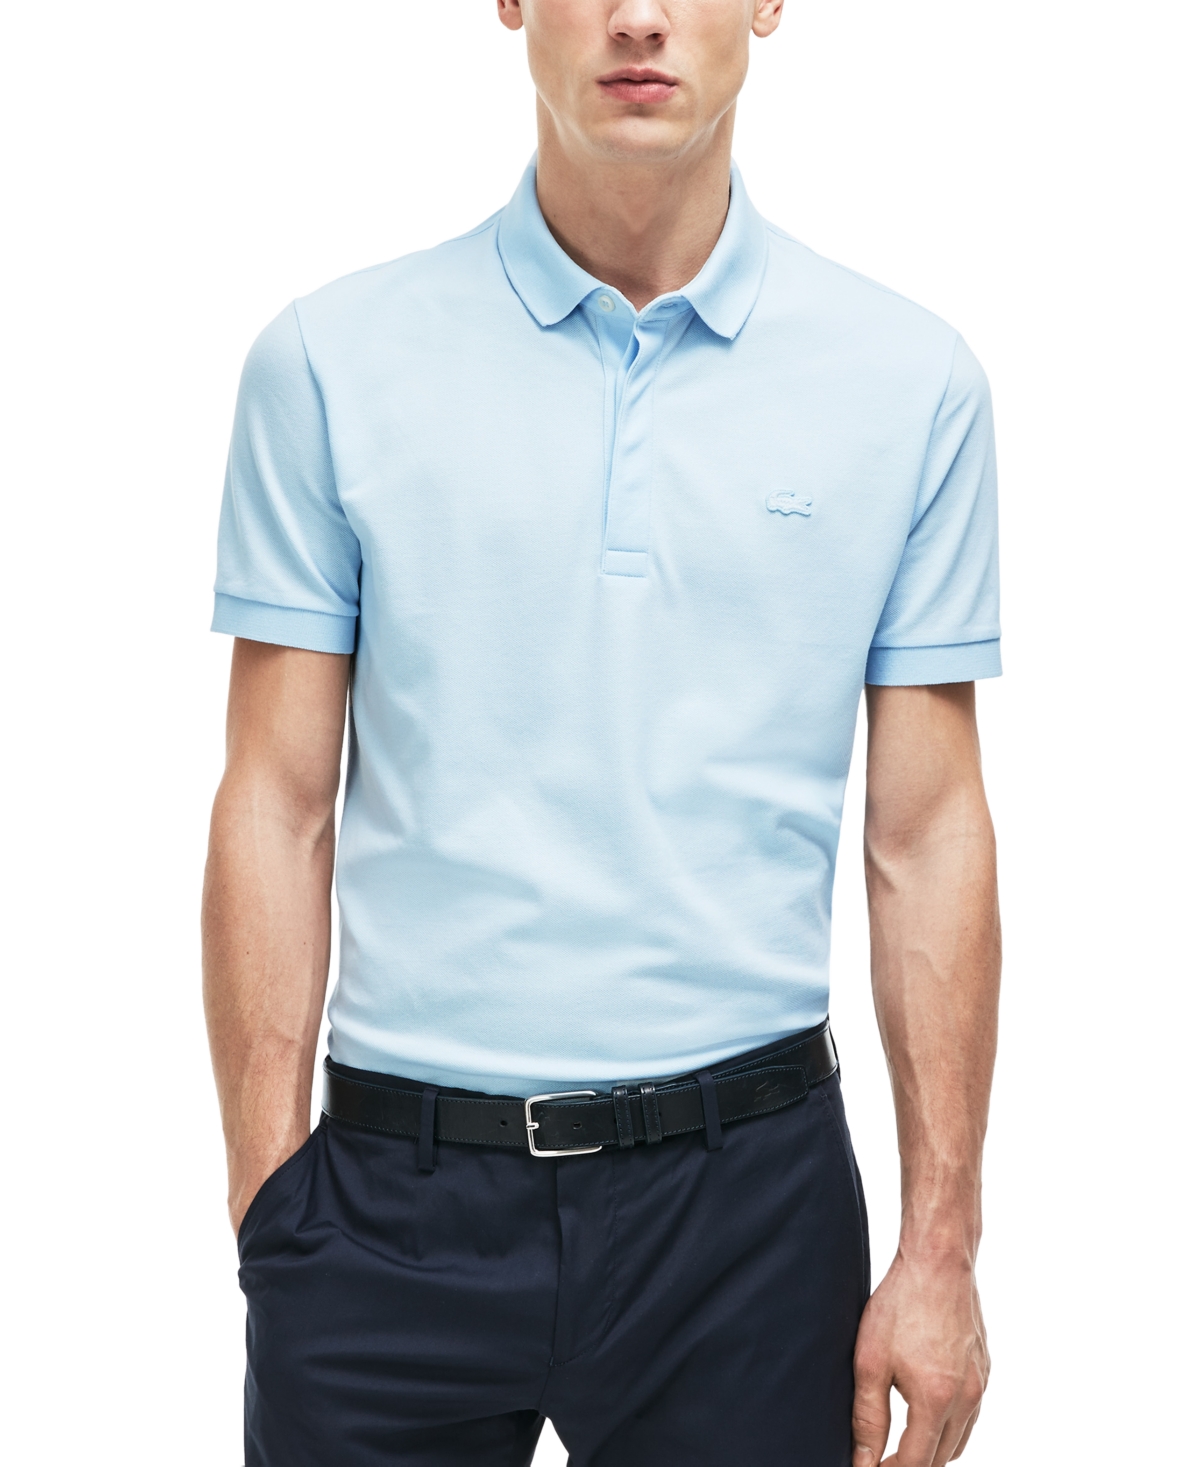 Men's Stretch Cotton Paris Polo Shirt - Rill Light Blue